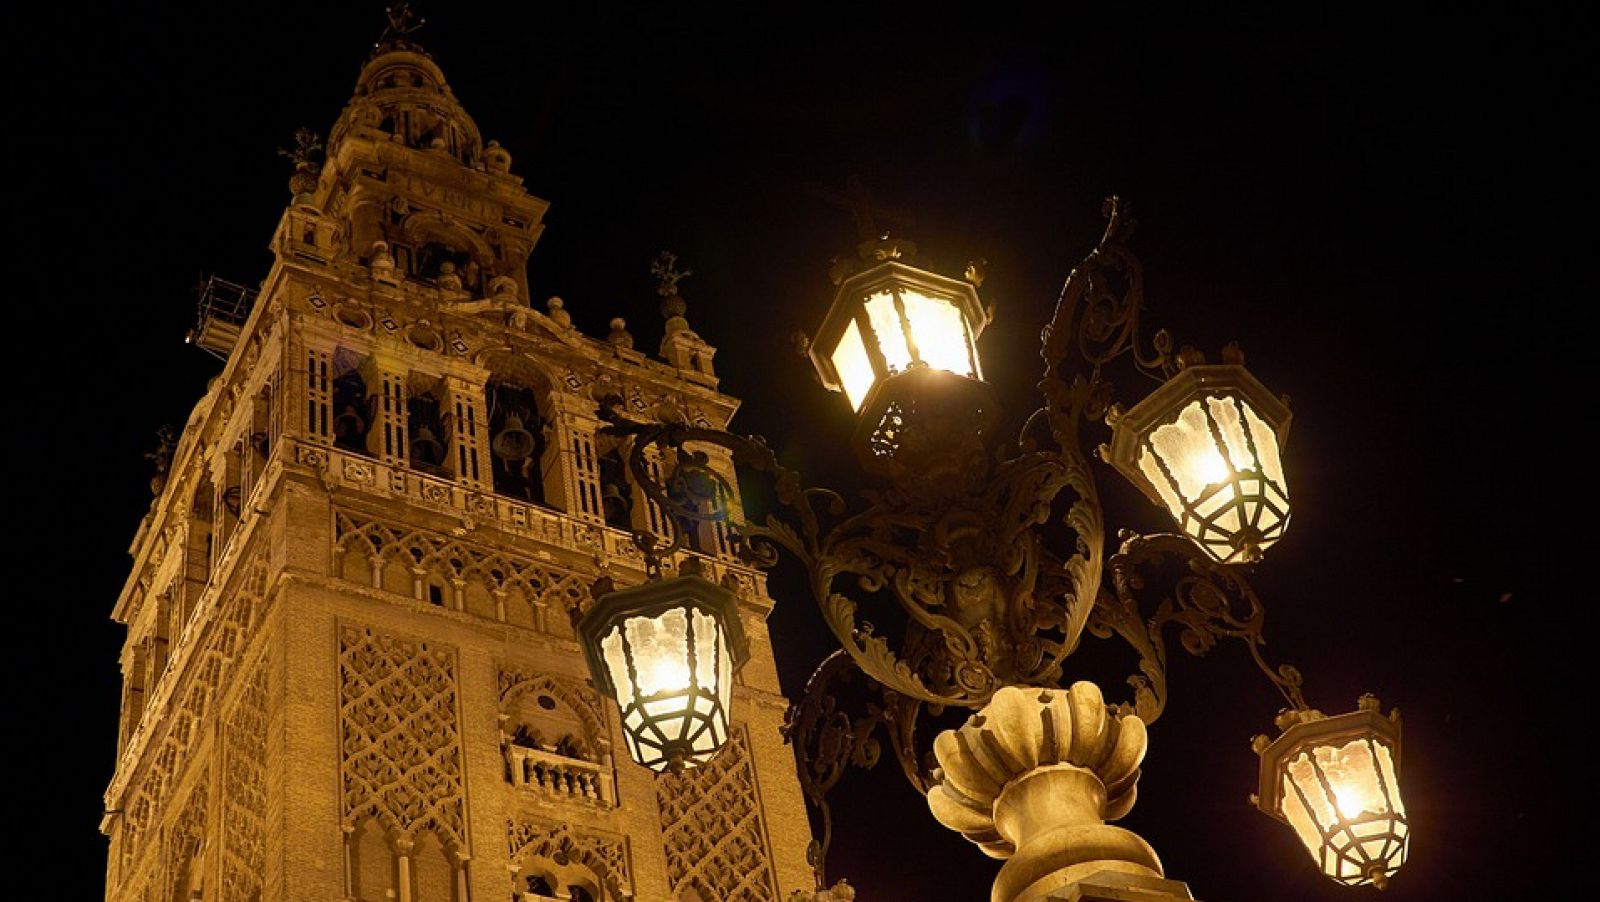 Especial 'La noche transfigurada' en Sevilla